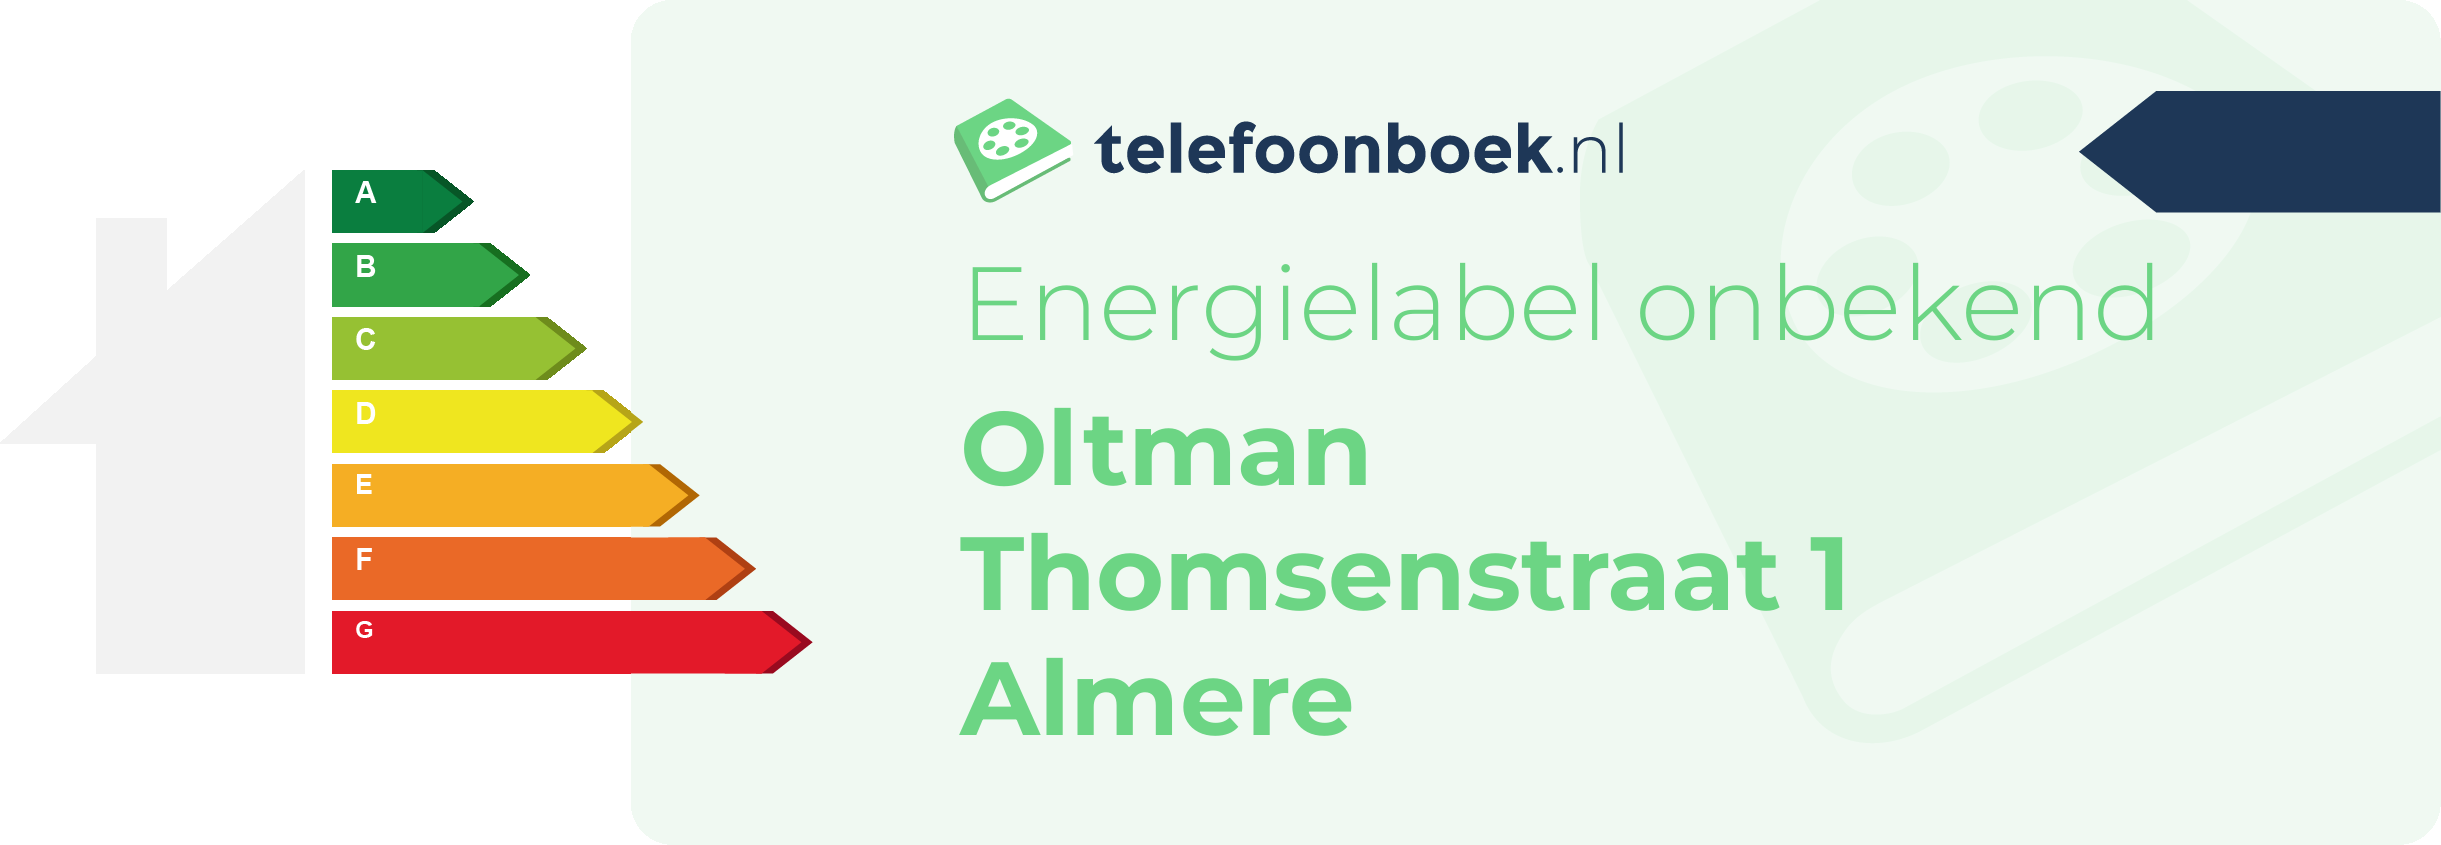 Energielabel Oltman Thomsenstraat 1 Almere